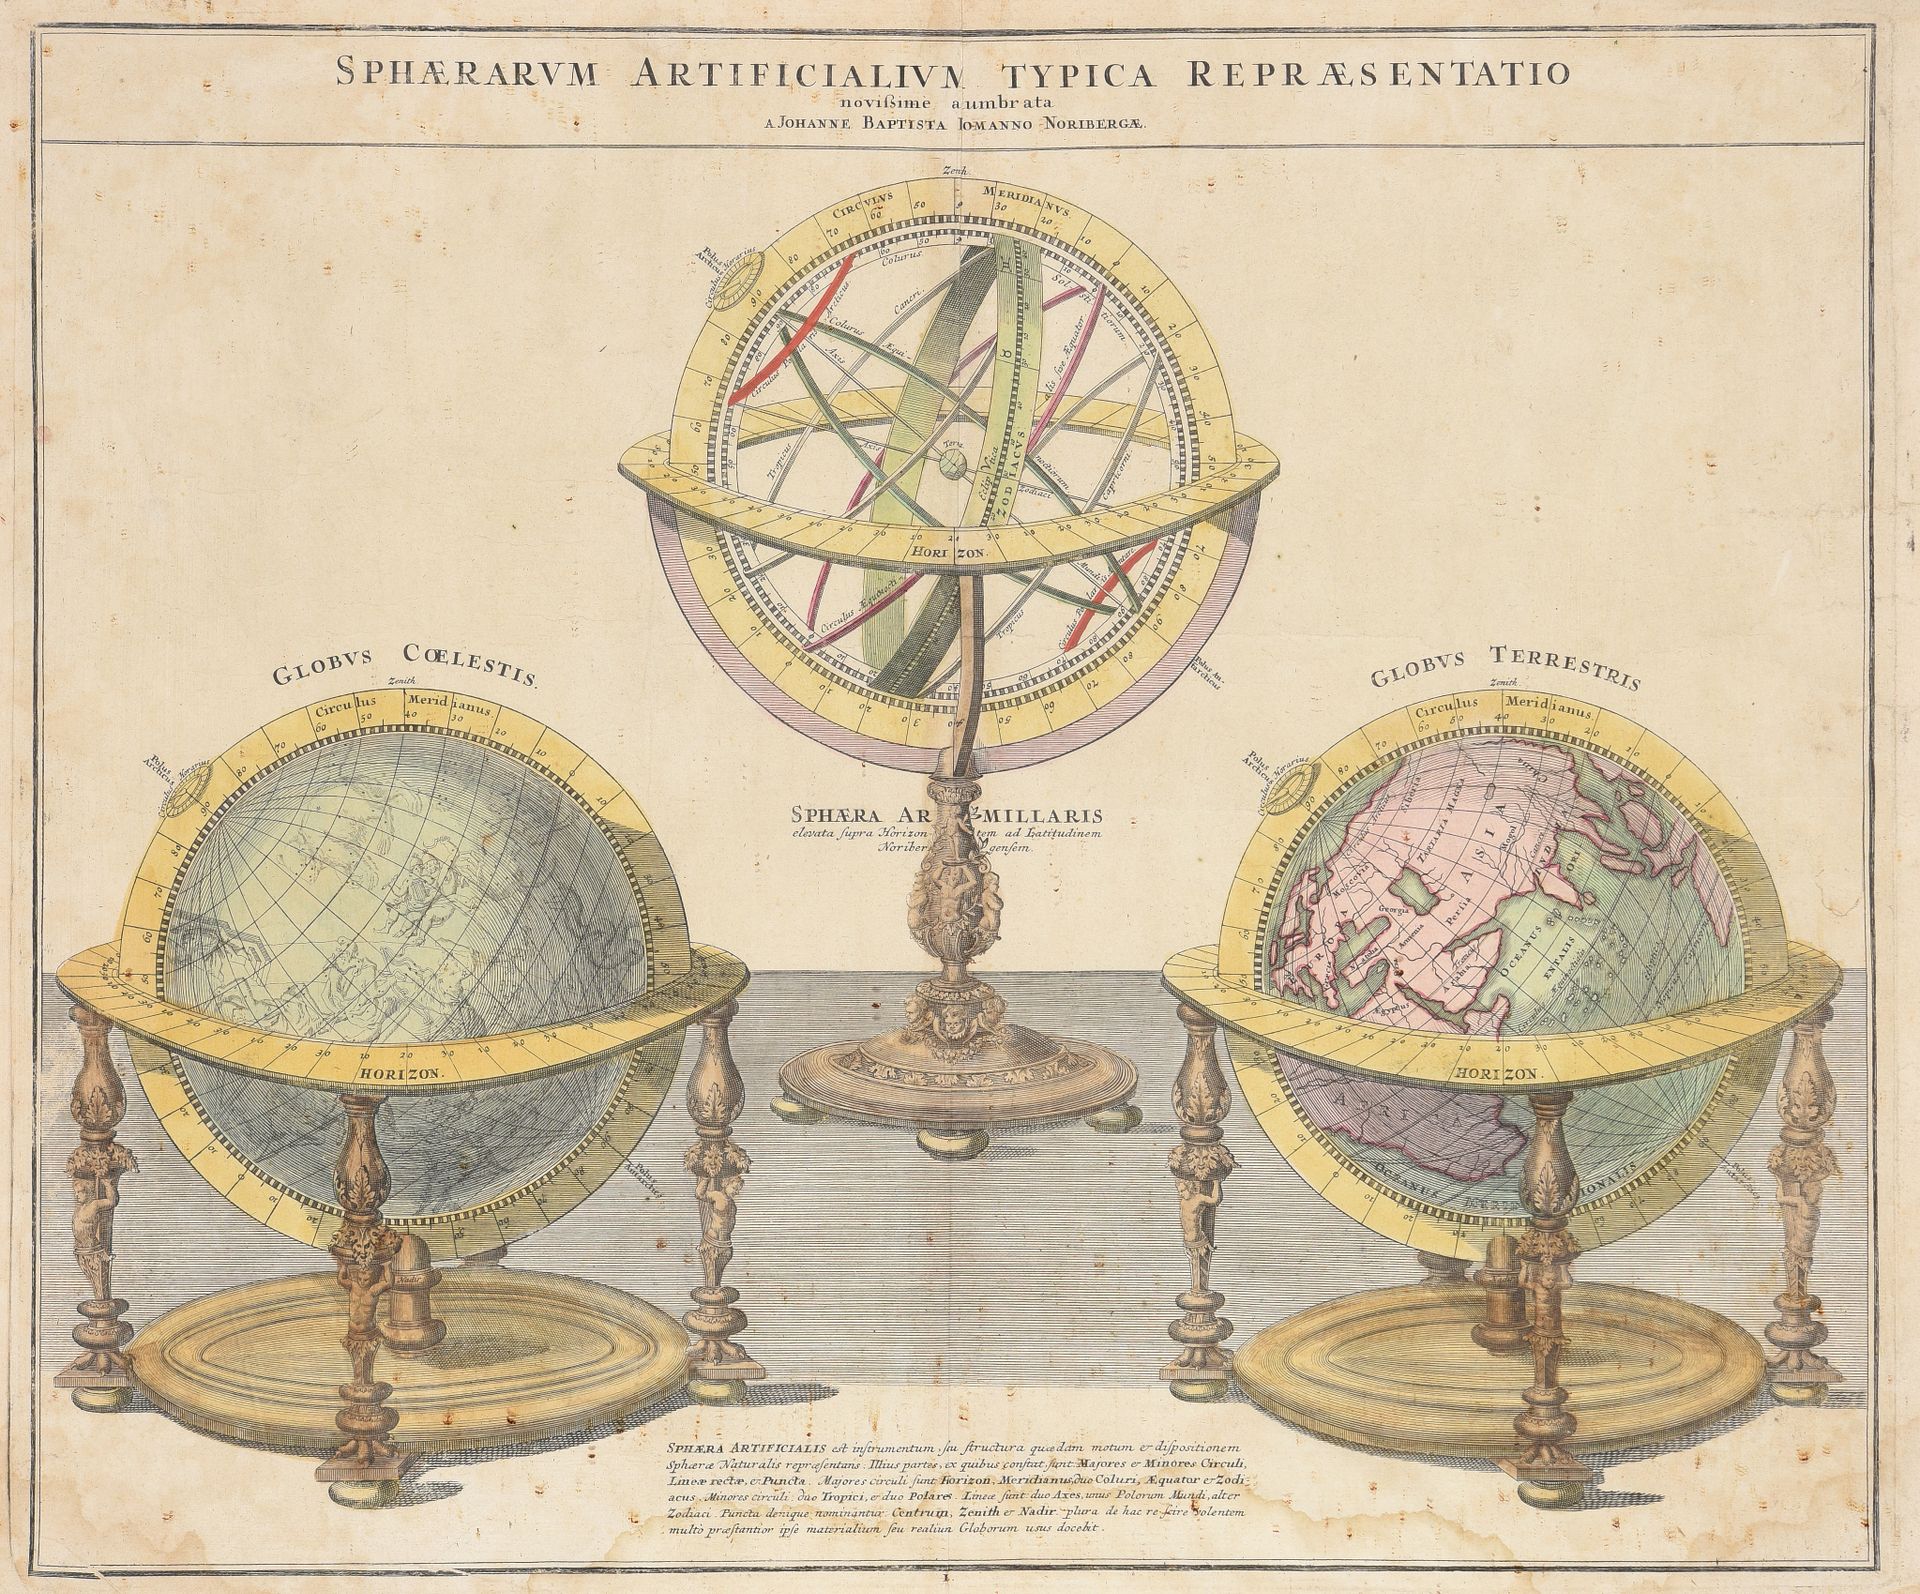 Null 约翰-巴蒂斯特-霍曼(1662 - 1724)

浑天仪、地球仪和天体仪

彩色雕刻

51.5 x 62 厘米